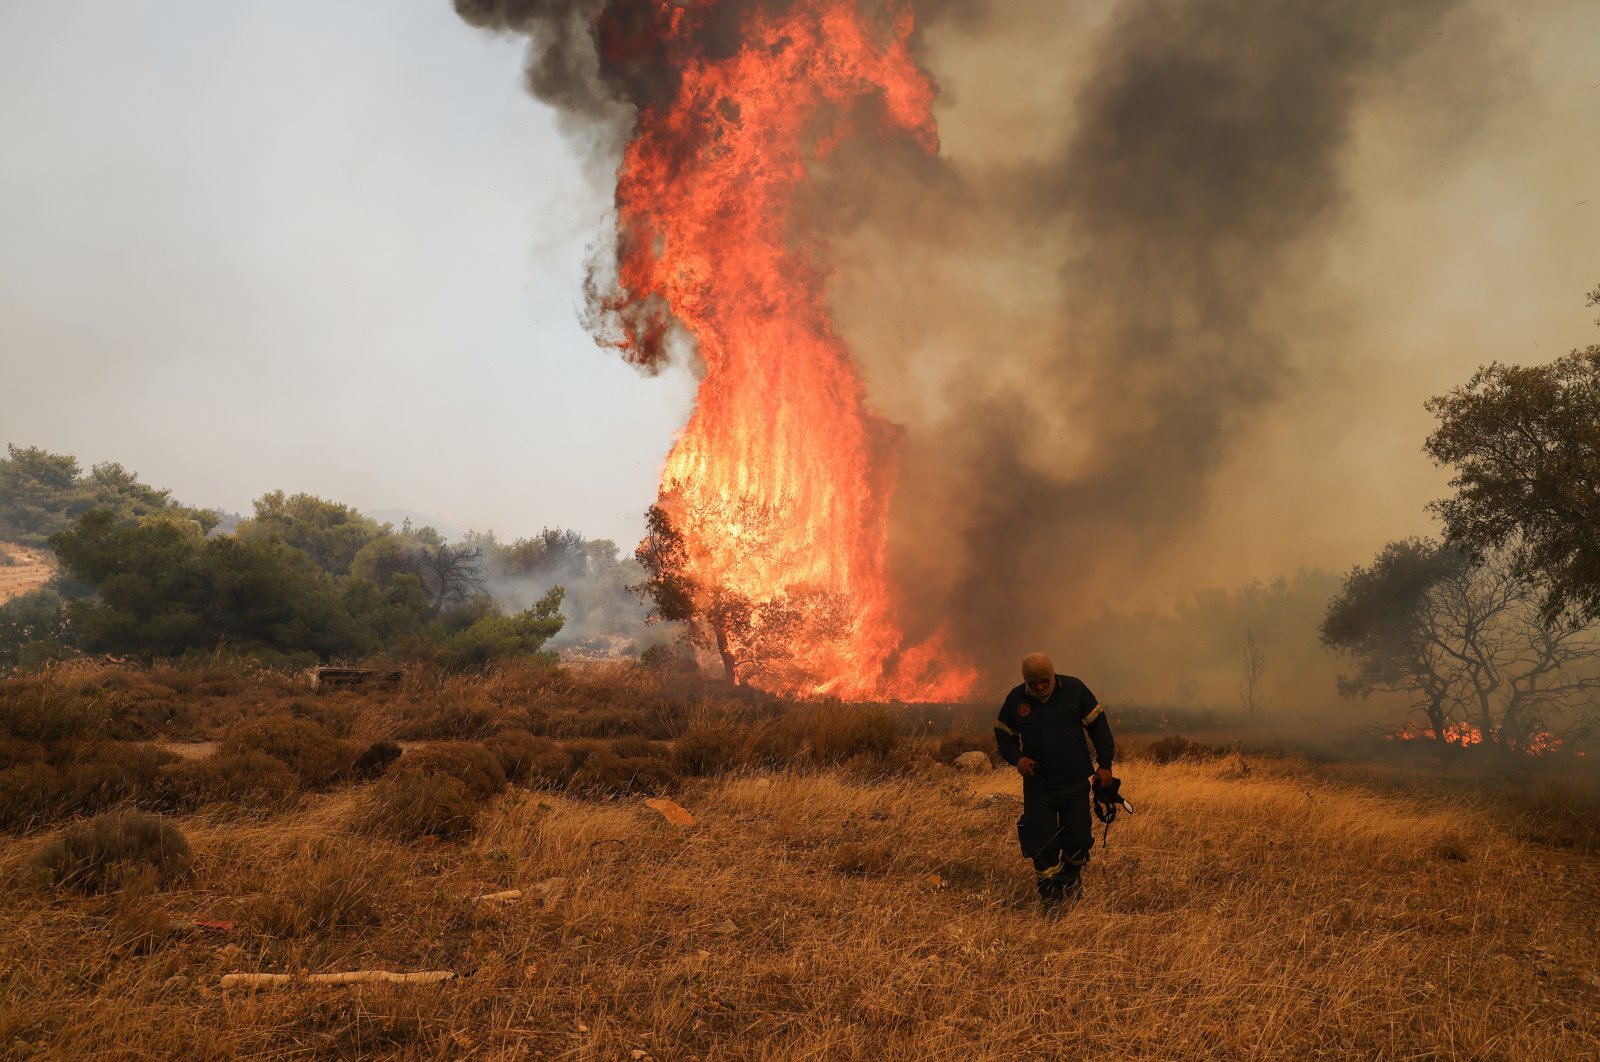 Yunani berterima kasih kepada Türkiye karena membantunya mengatasi kebakaran hutan yang mengamuk